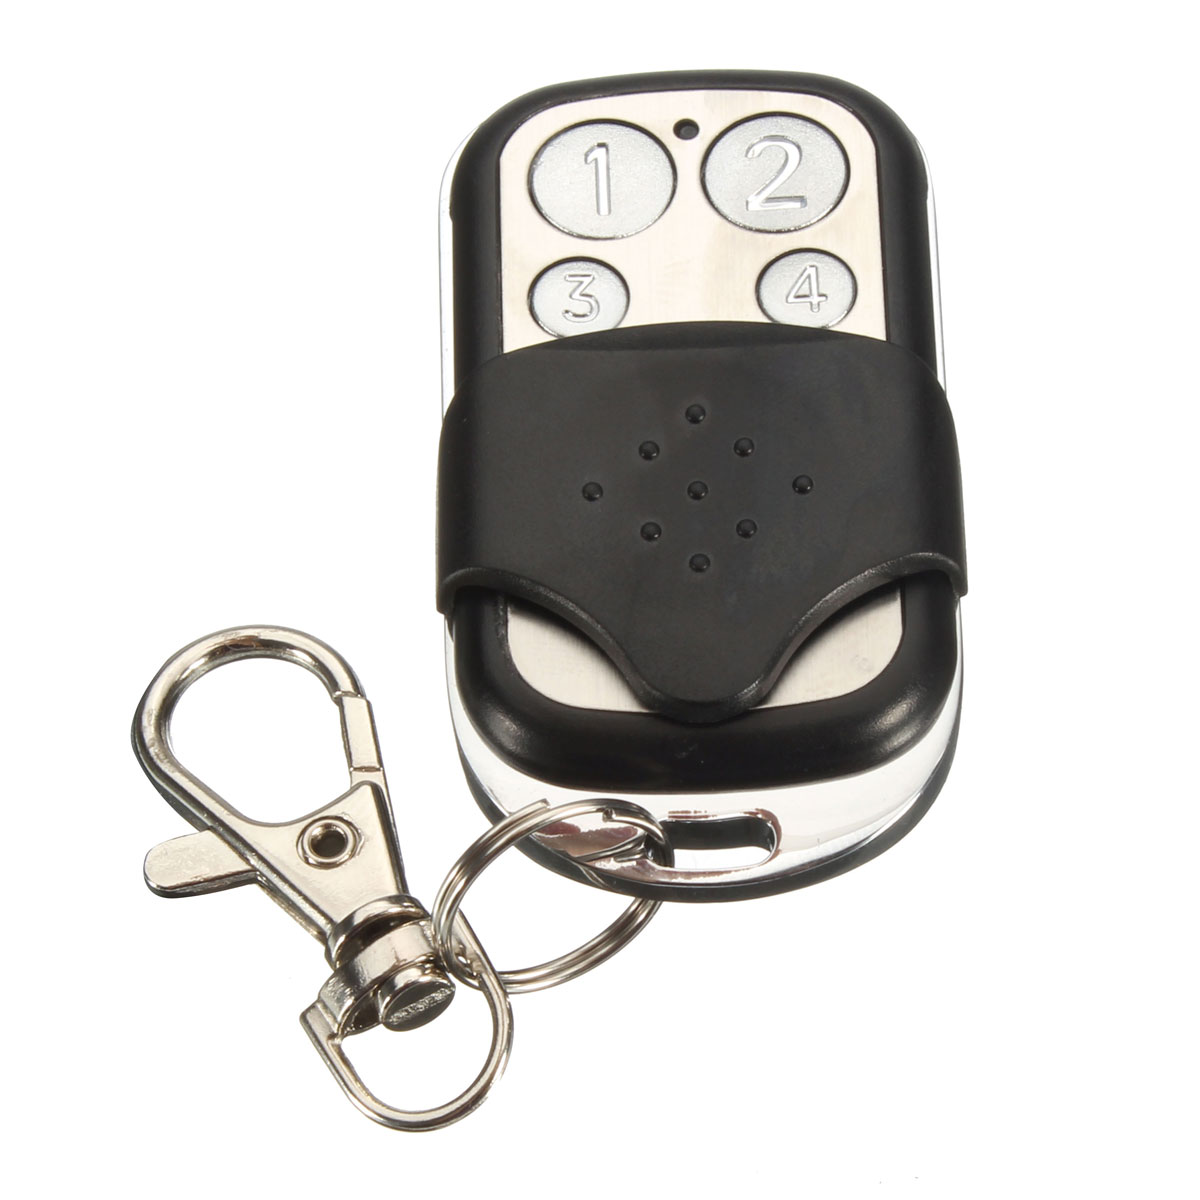 4-Button-433MHz-Garage-Gate-Key-Remote-Control-For-Marantec-D302D304D313-Comfort-220-1060990-1